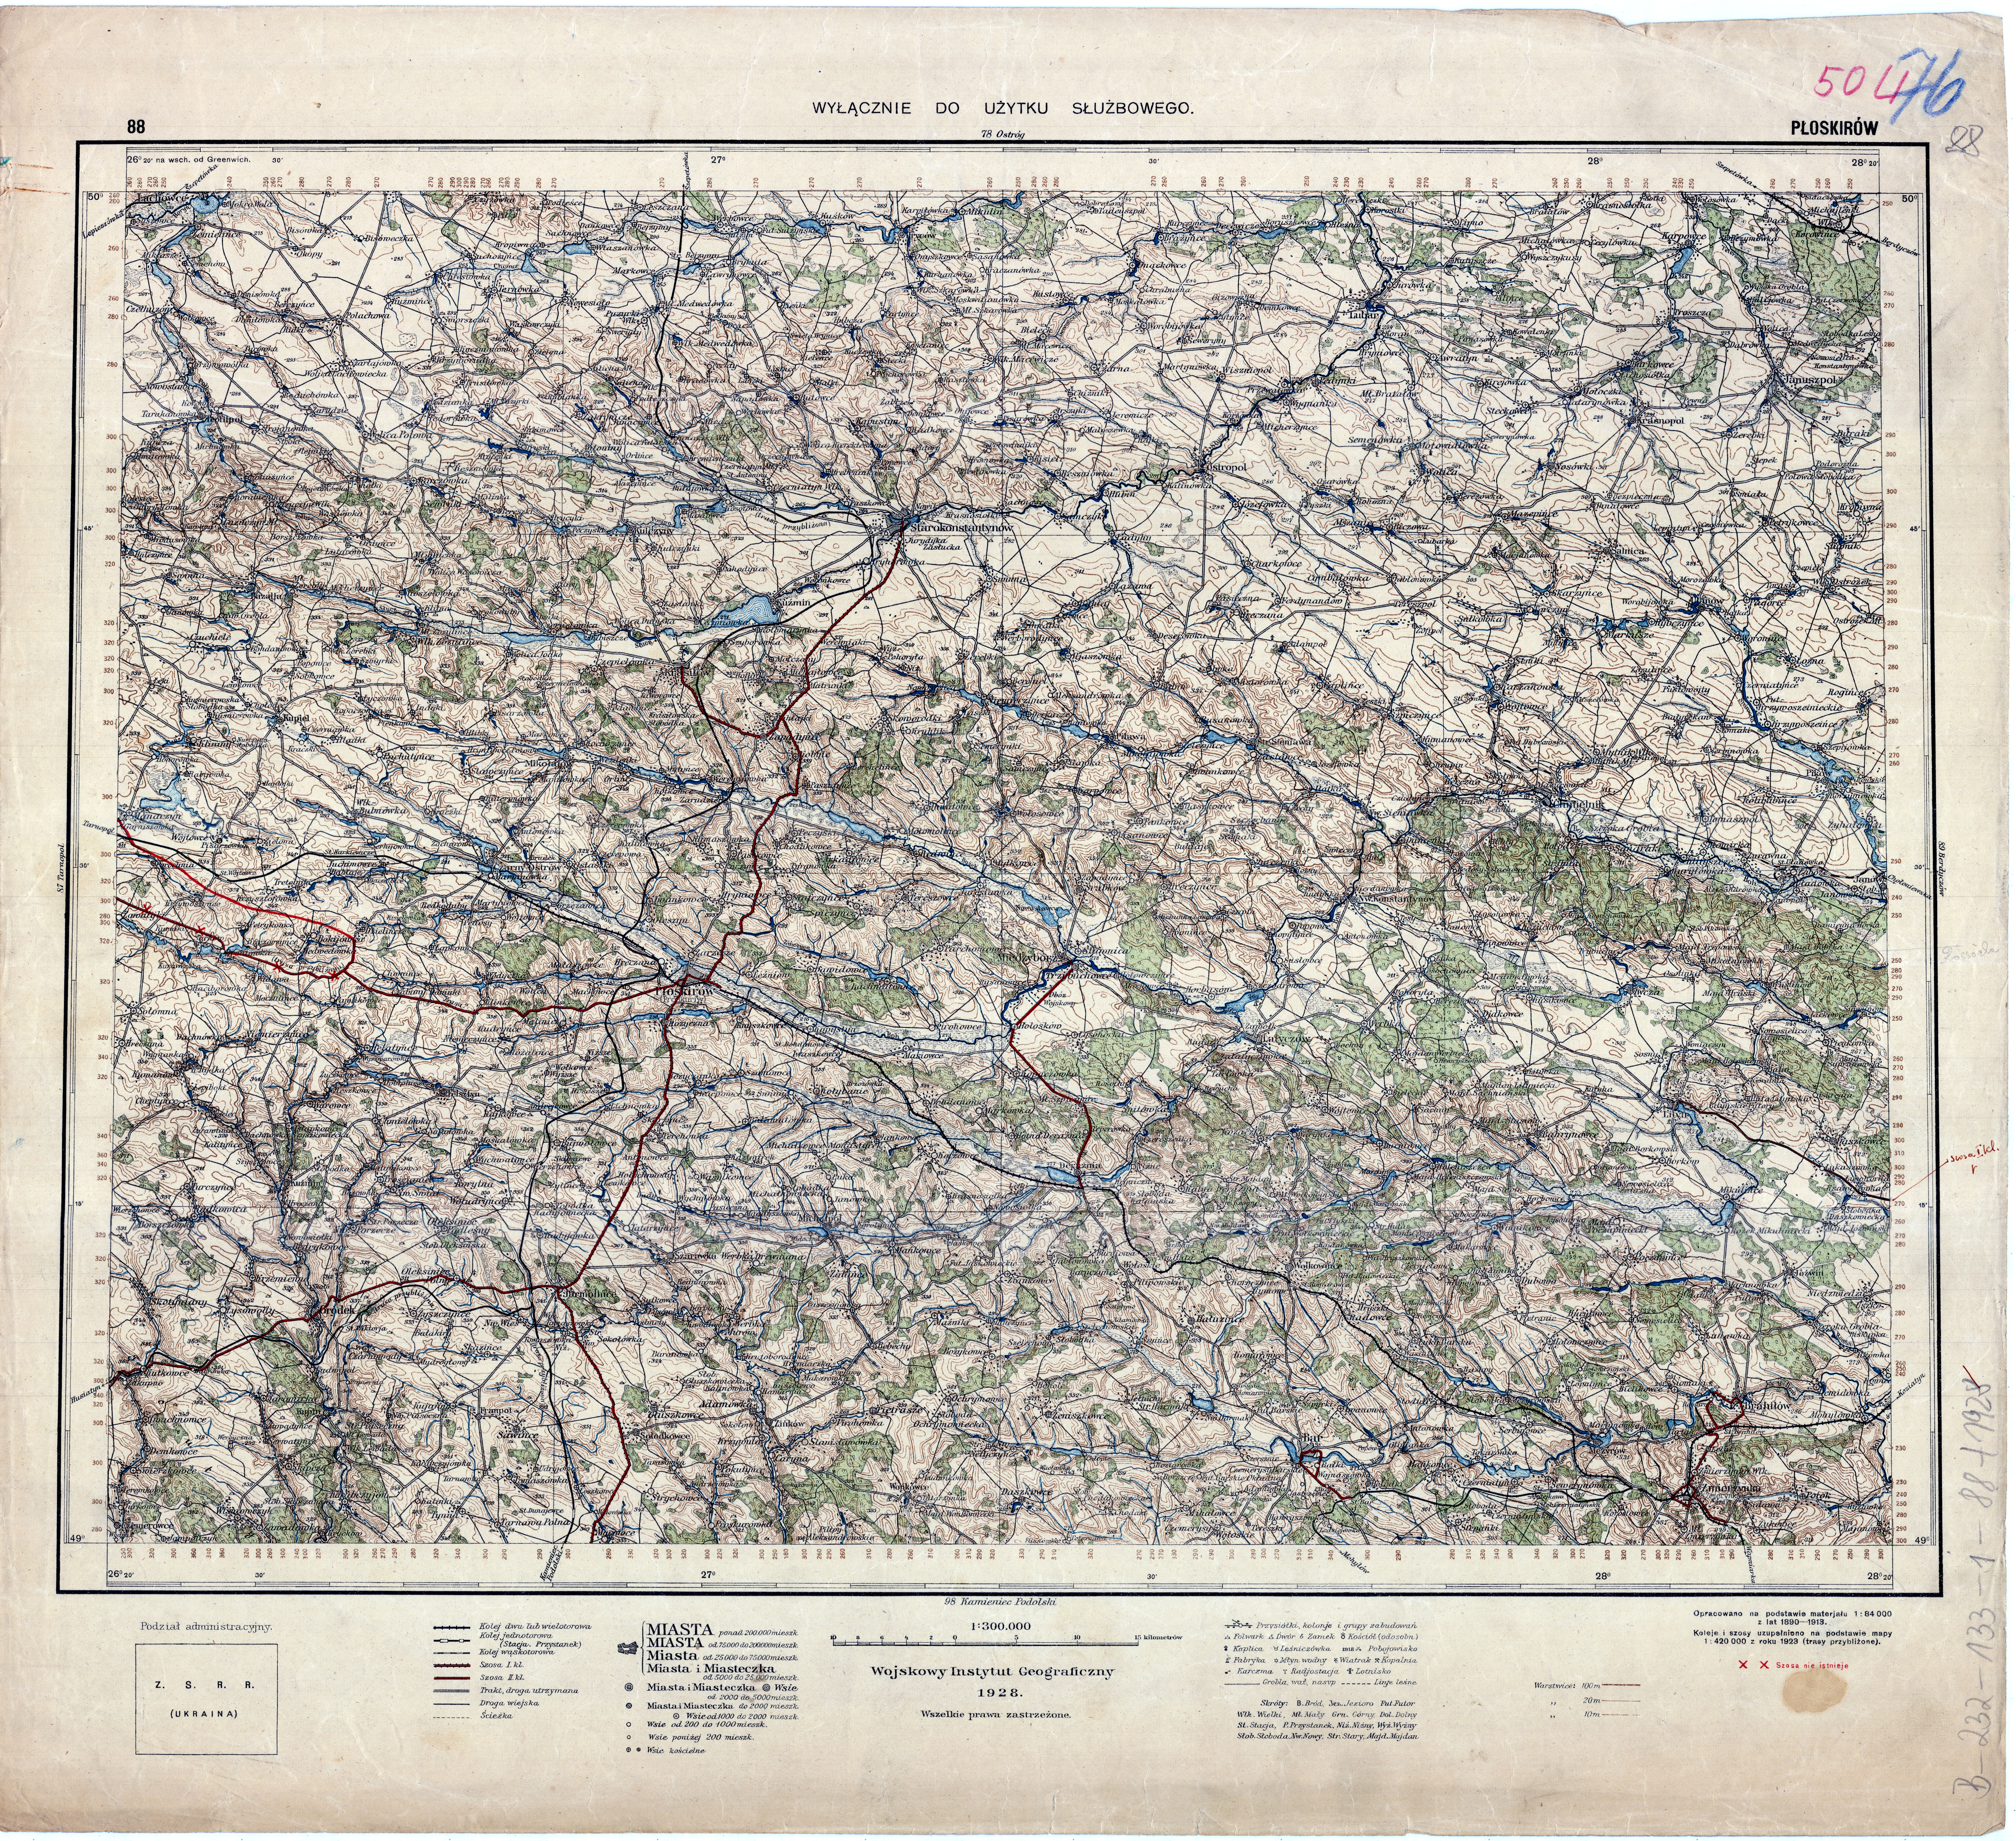 mapa operacyjna Polski 1_300 000 - 88_PLOSKIROW_1928_2.jpg